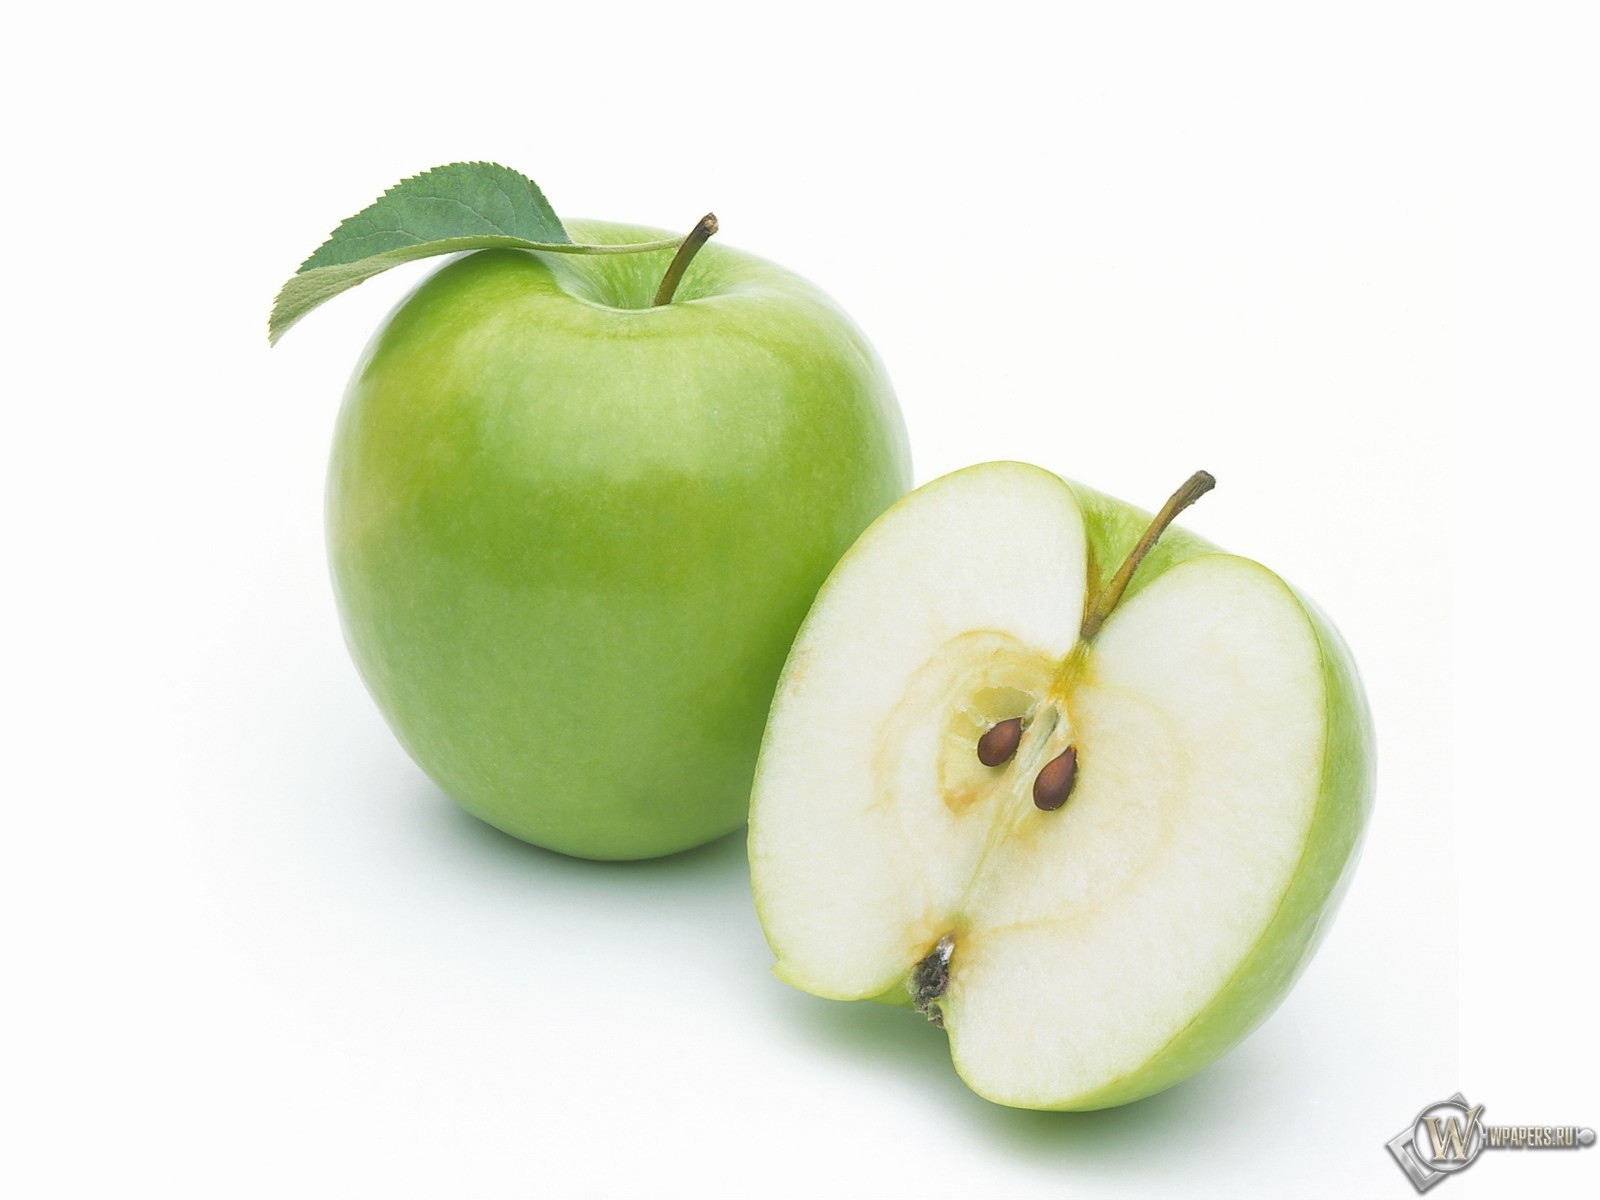 Скачать обои Зеленое яблоко () для рабочего стола 1600х1200 (4:3 .